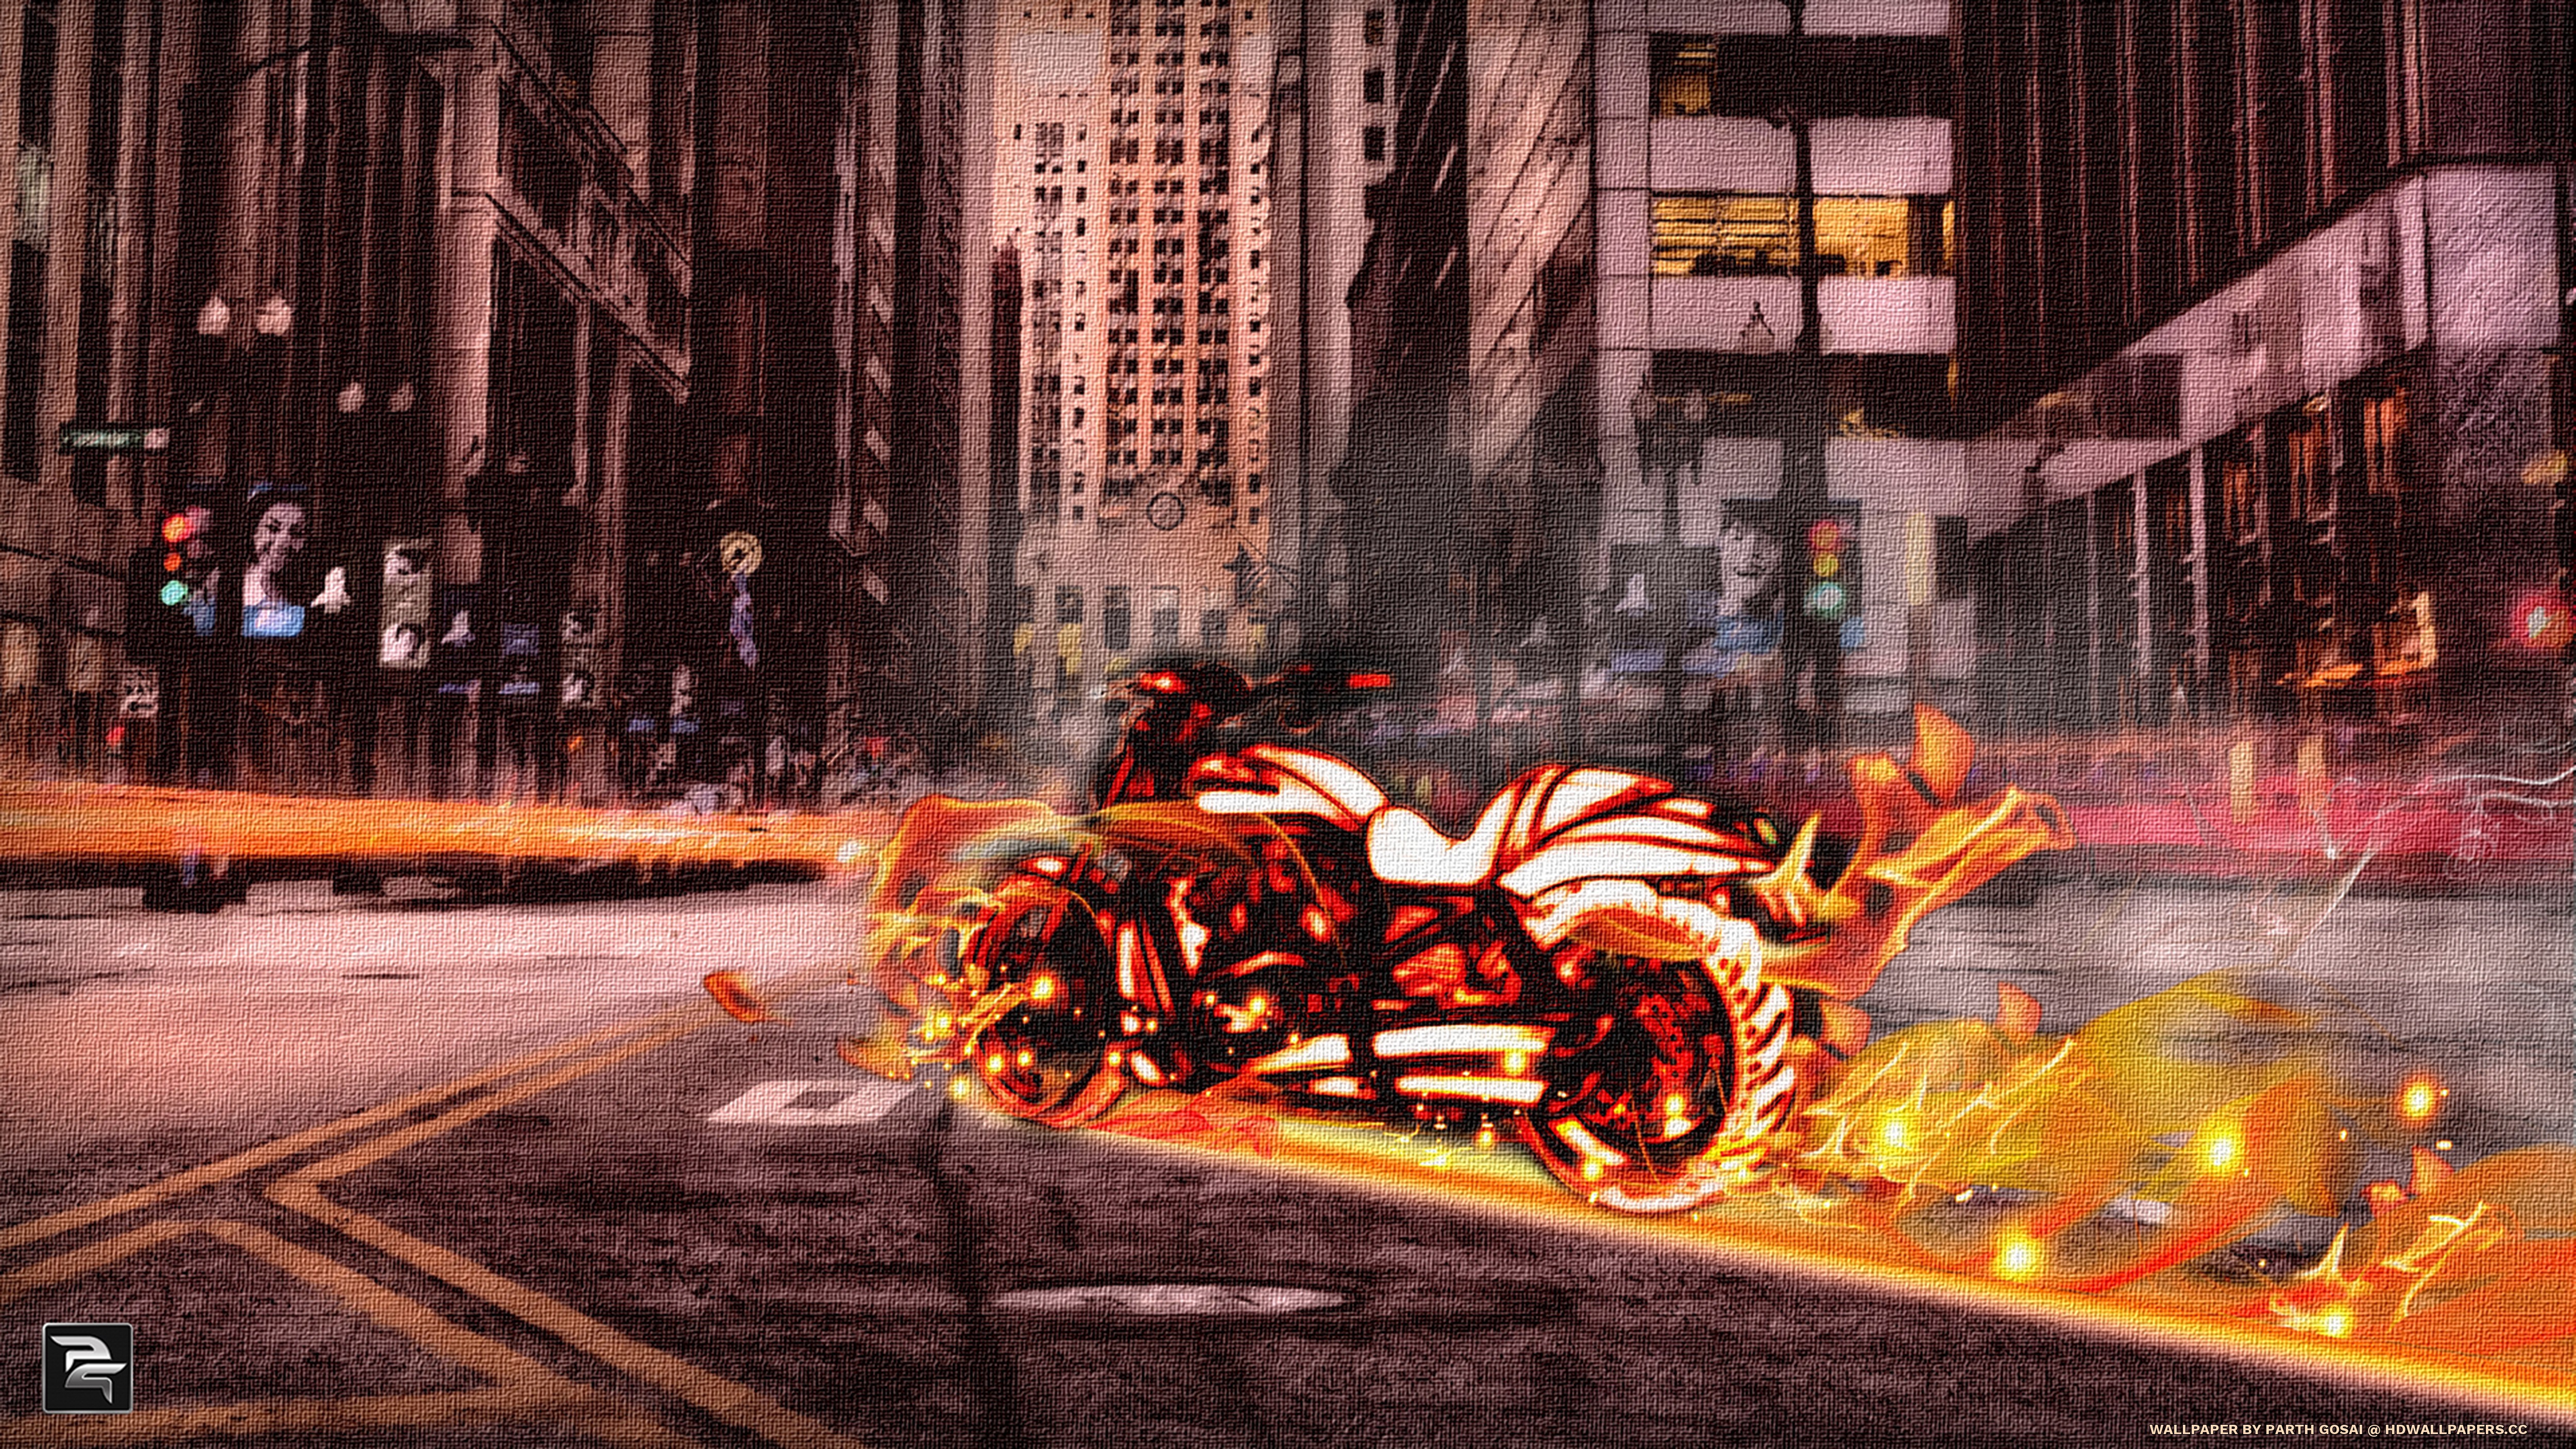 Fire-bike2 - Fire Bike - HD Wallpaper 